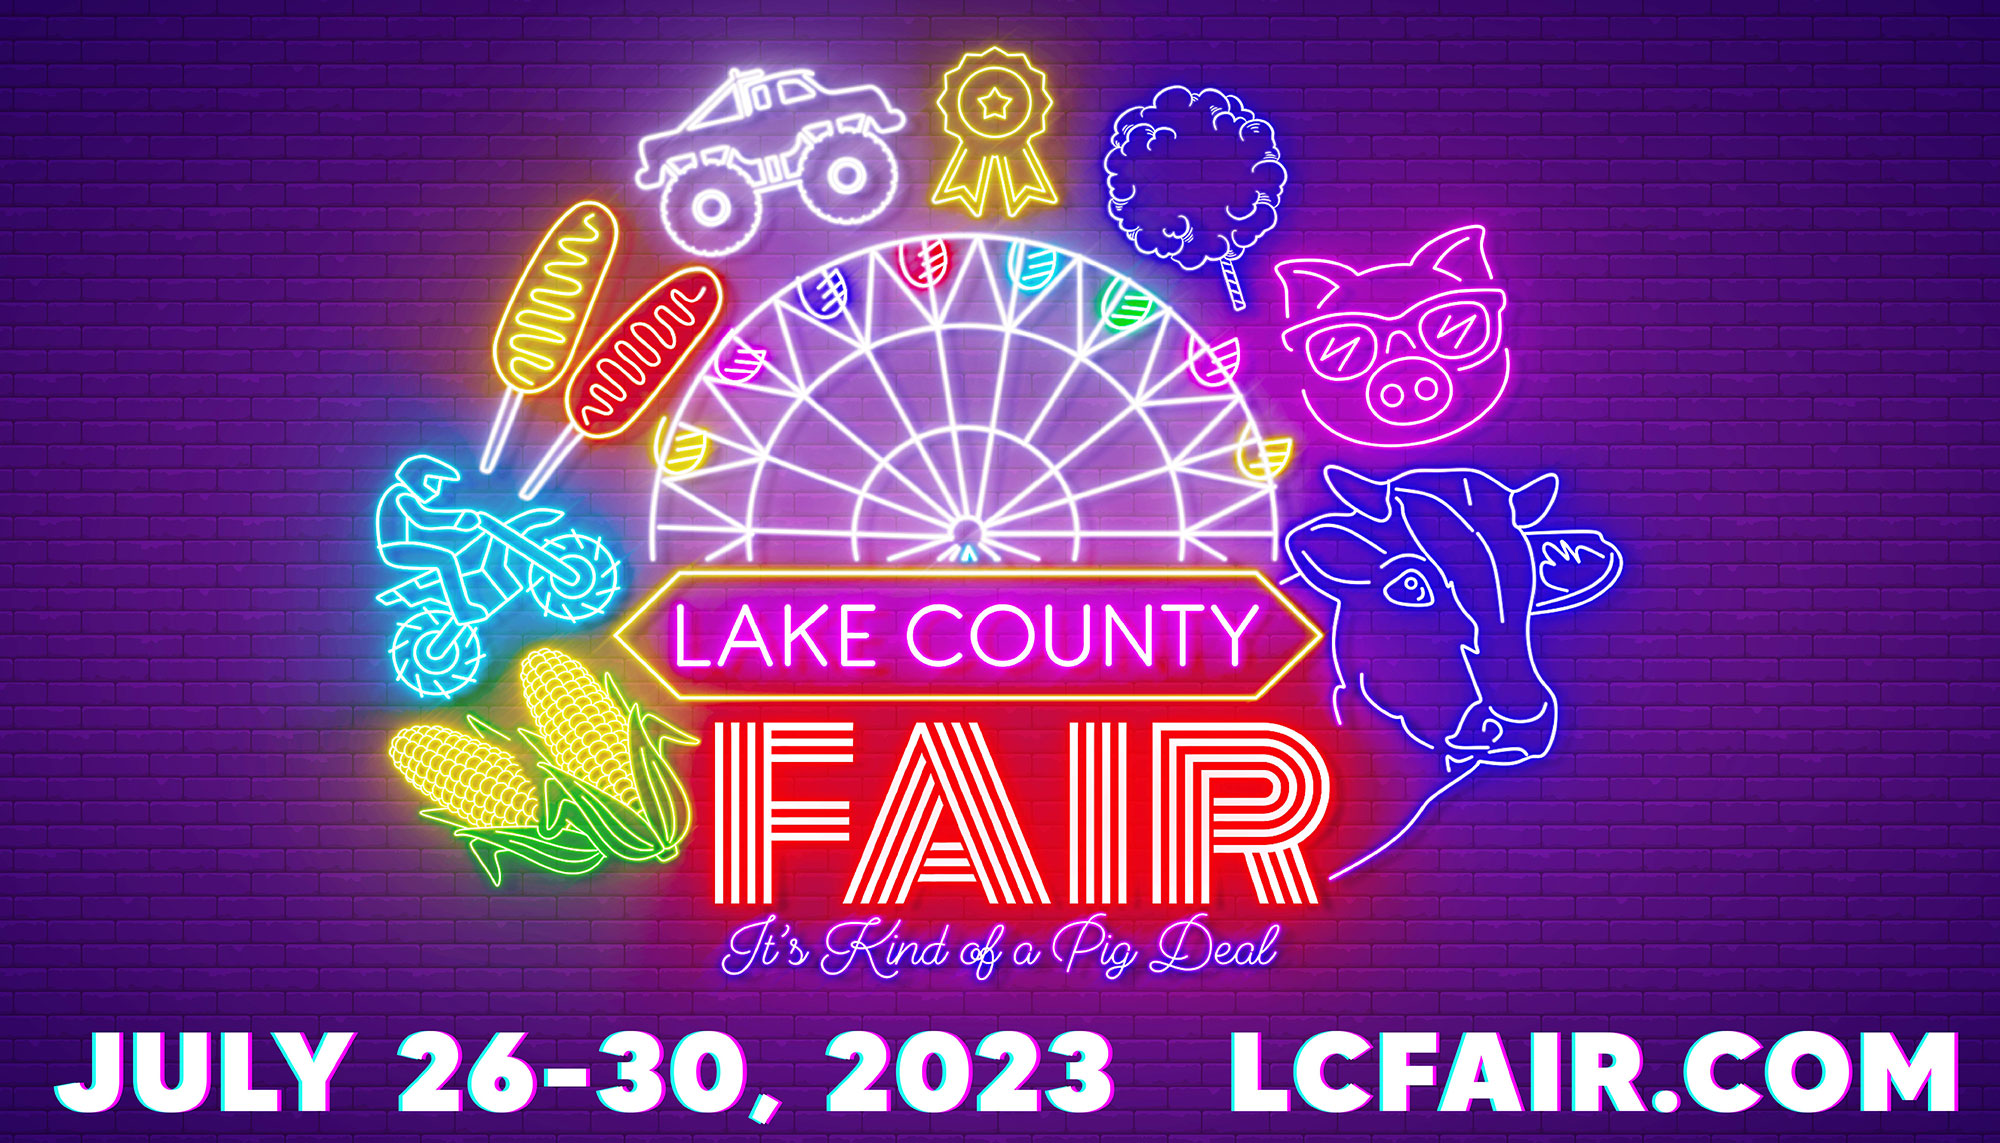 The 94th Annual Lake County Fair